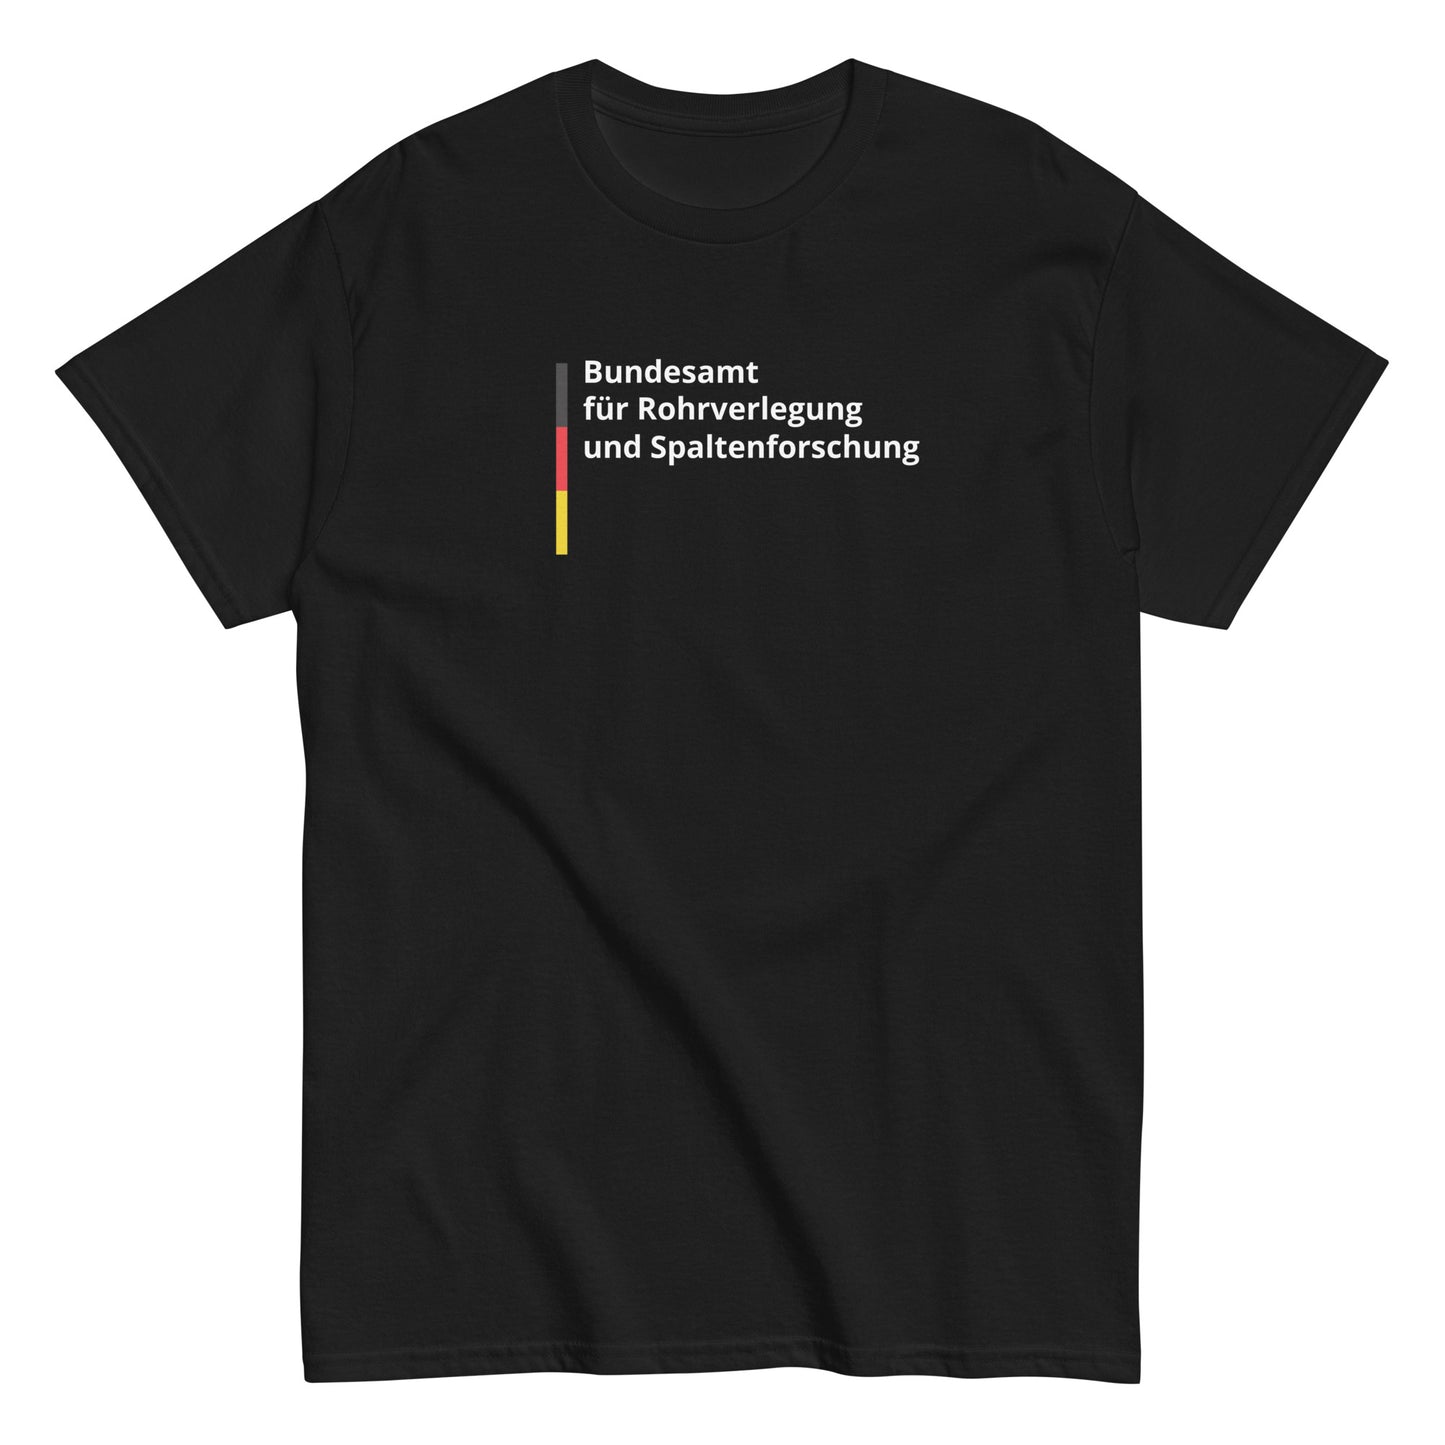 Bundesamt für Rohrverlegung und Spaltenforschung T-Shirt